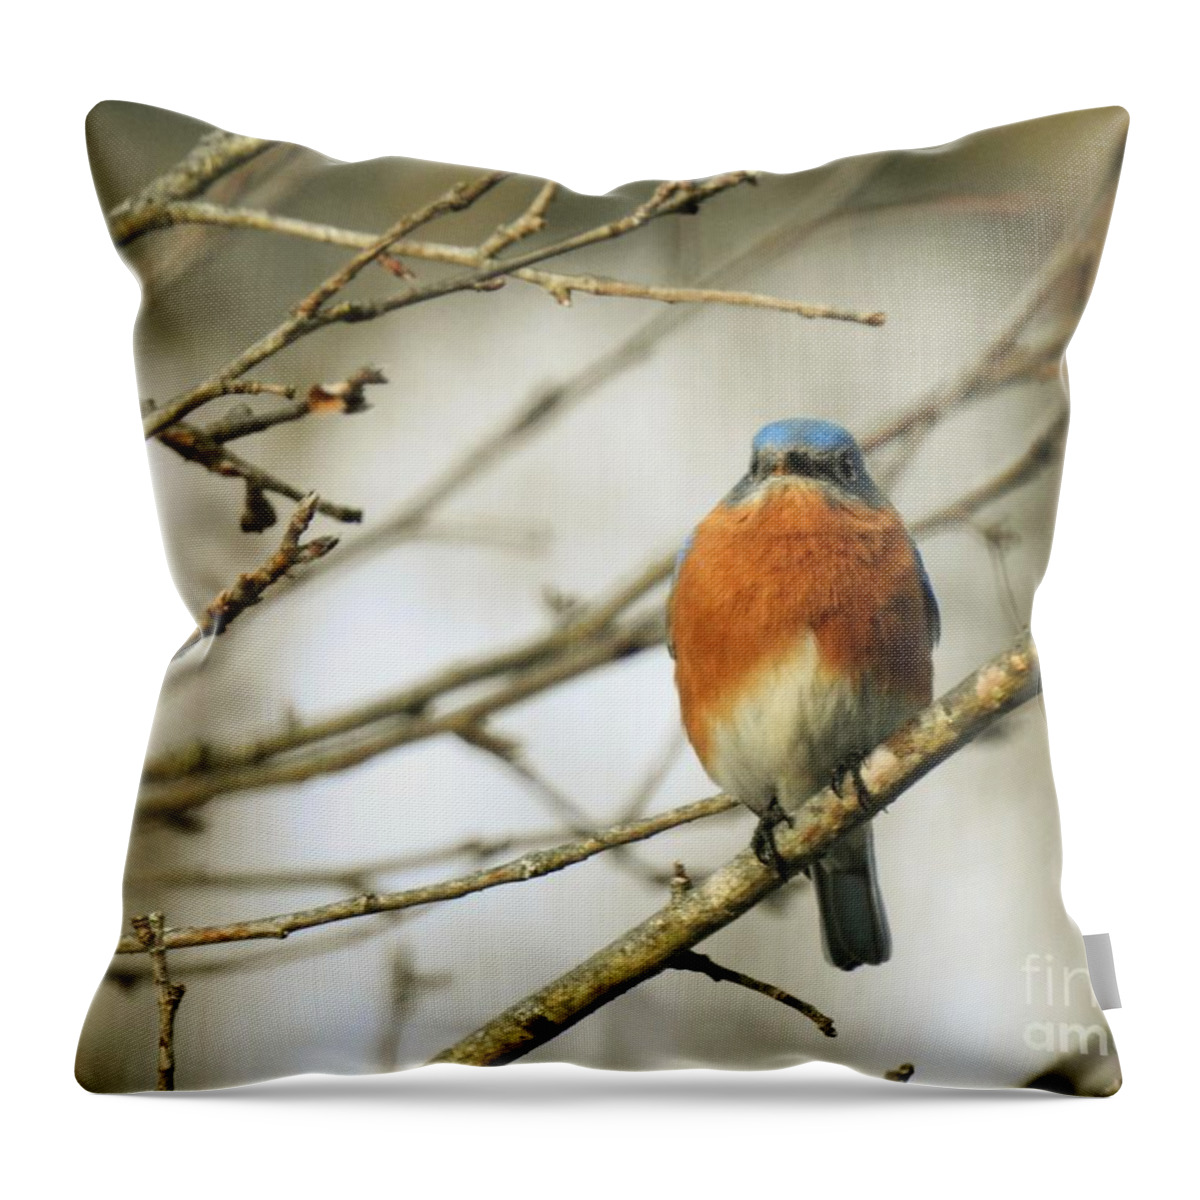 Eastern Bluebird Throw Pillow featuring the photograph Eastern Bluebird At Rest by Eunice Miller